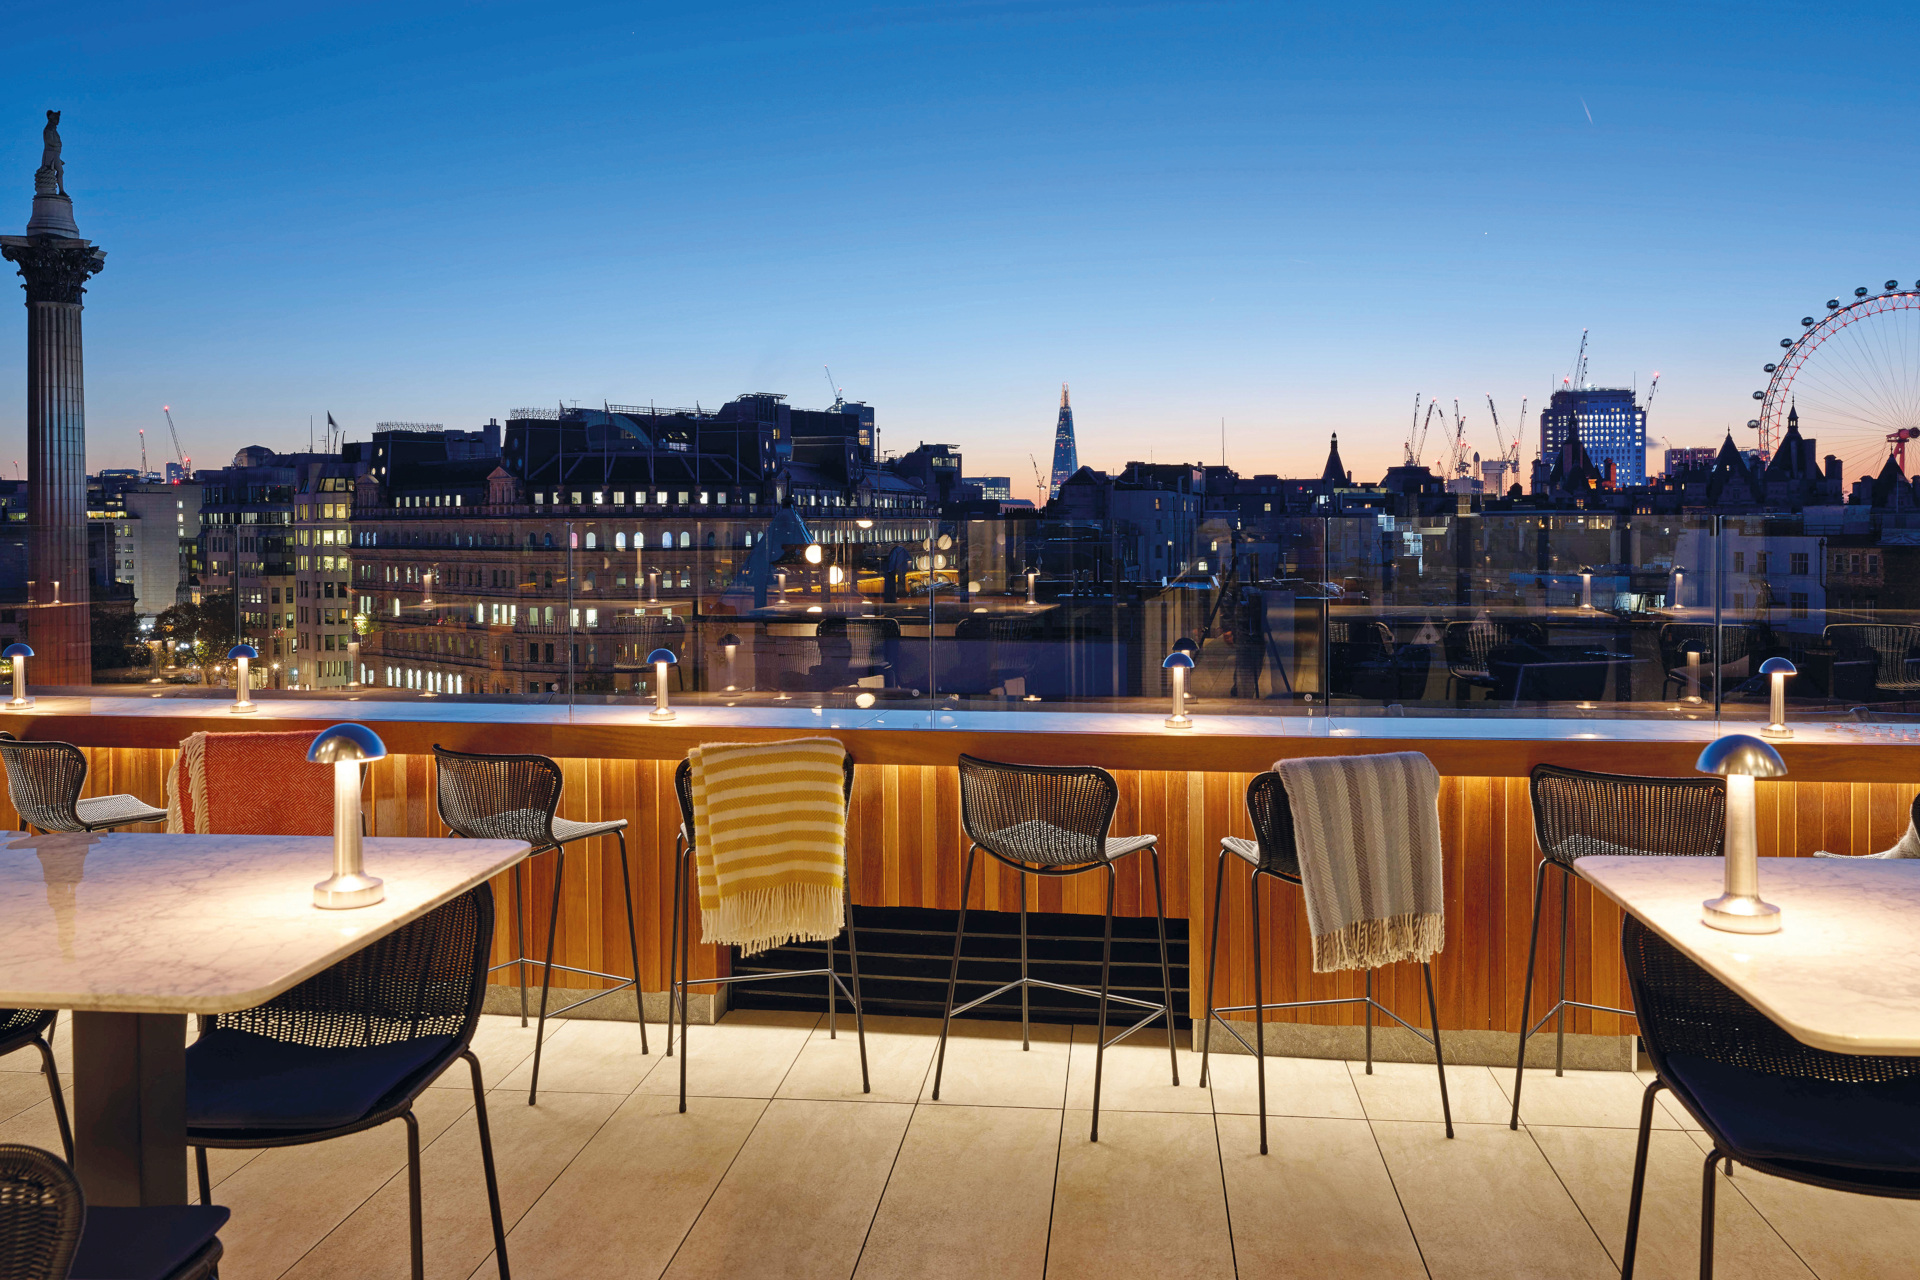 Rooftop bar overlooking London